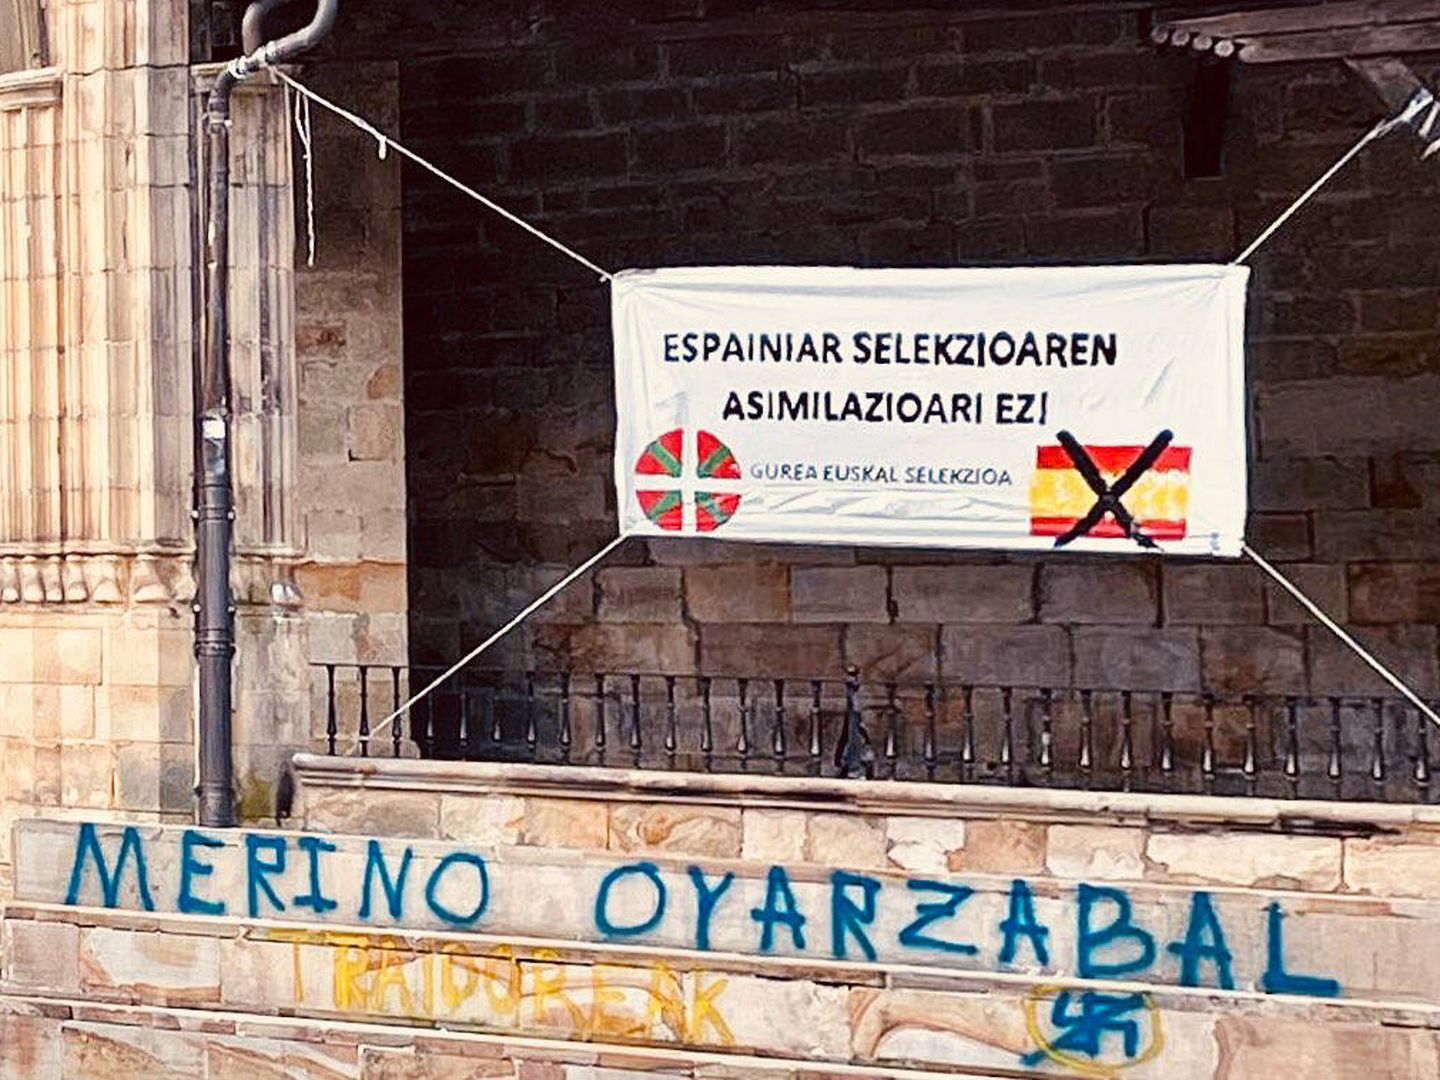 Pintada y pancarta contra Oyarzabal y Merino, Elorrio. (Cedida/PP Vasco)